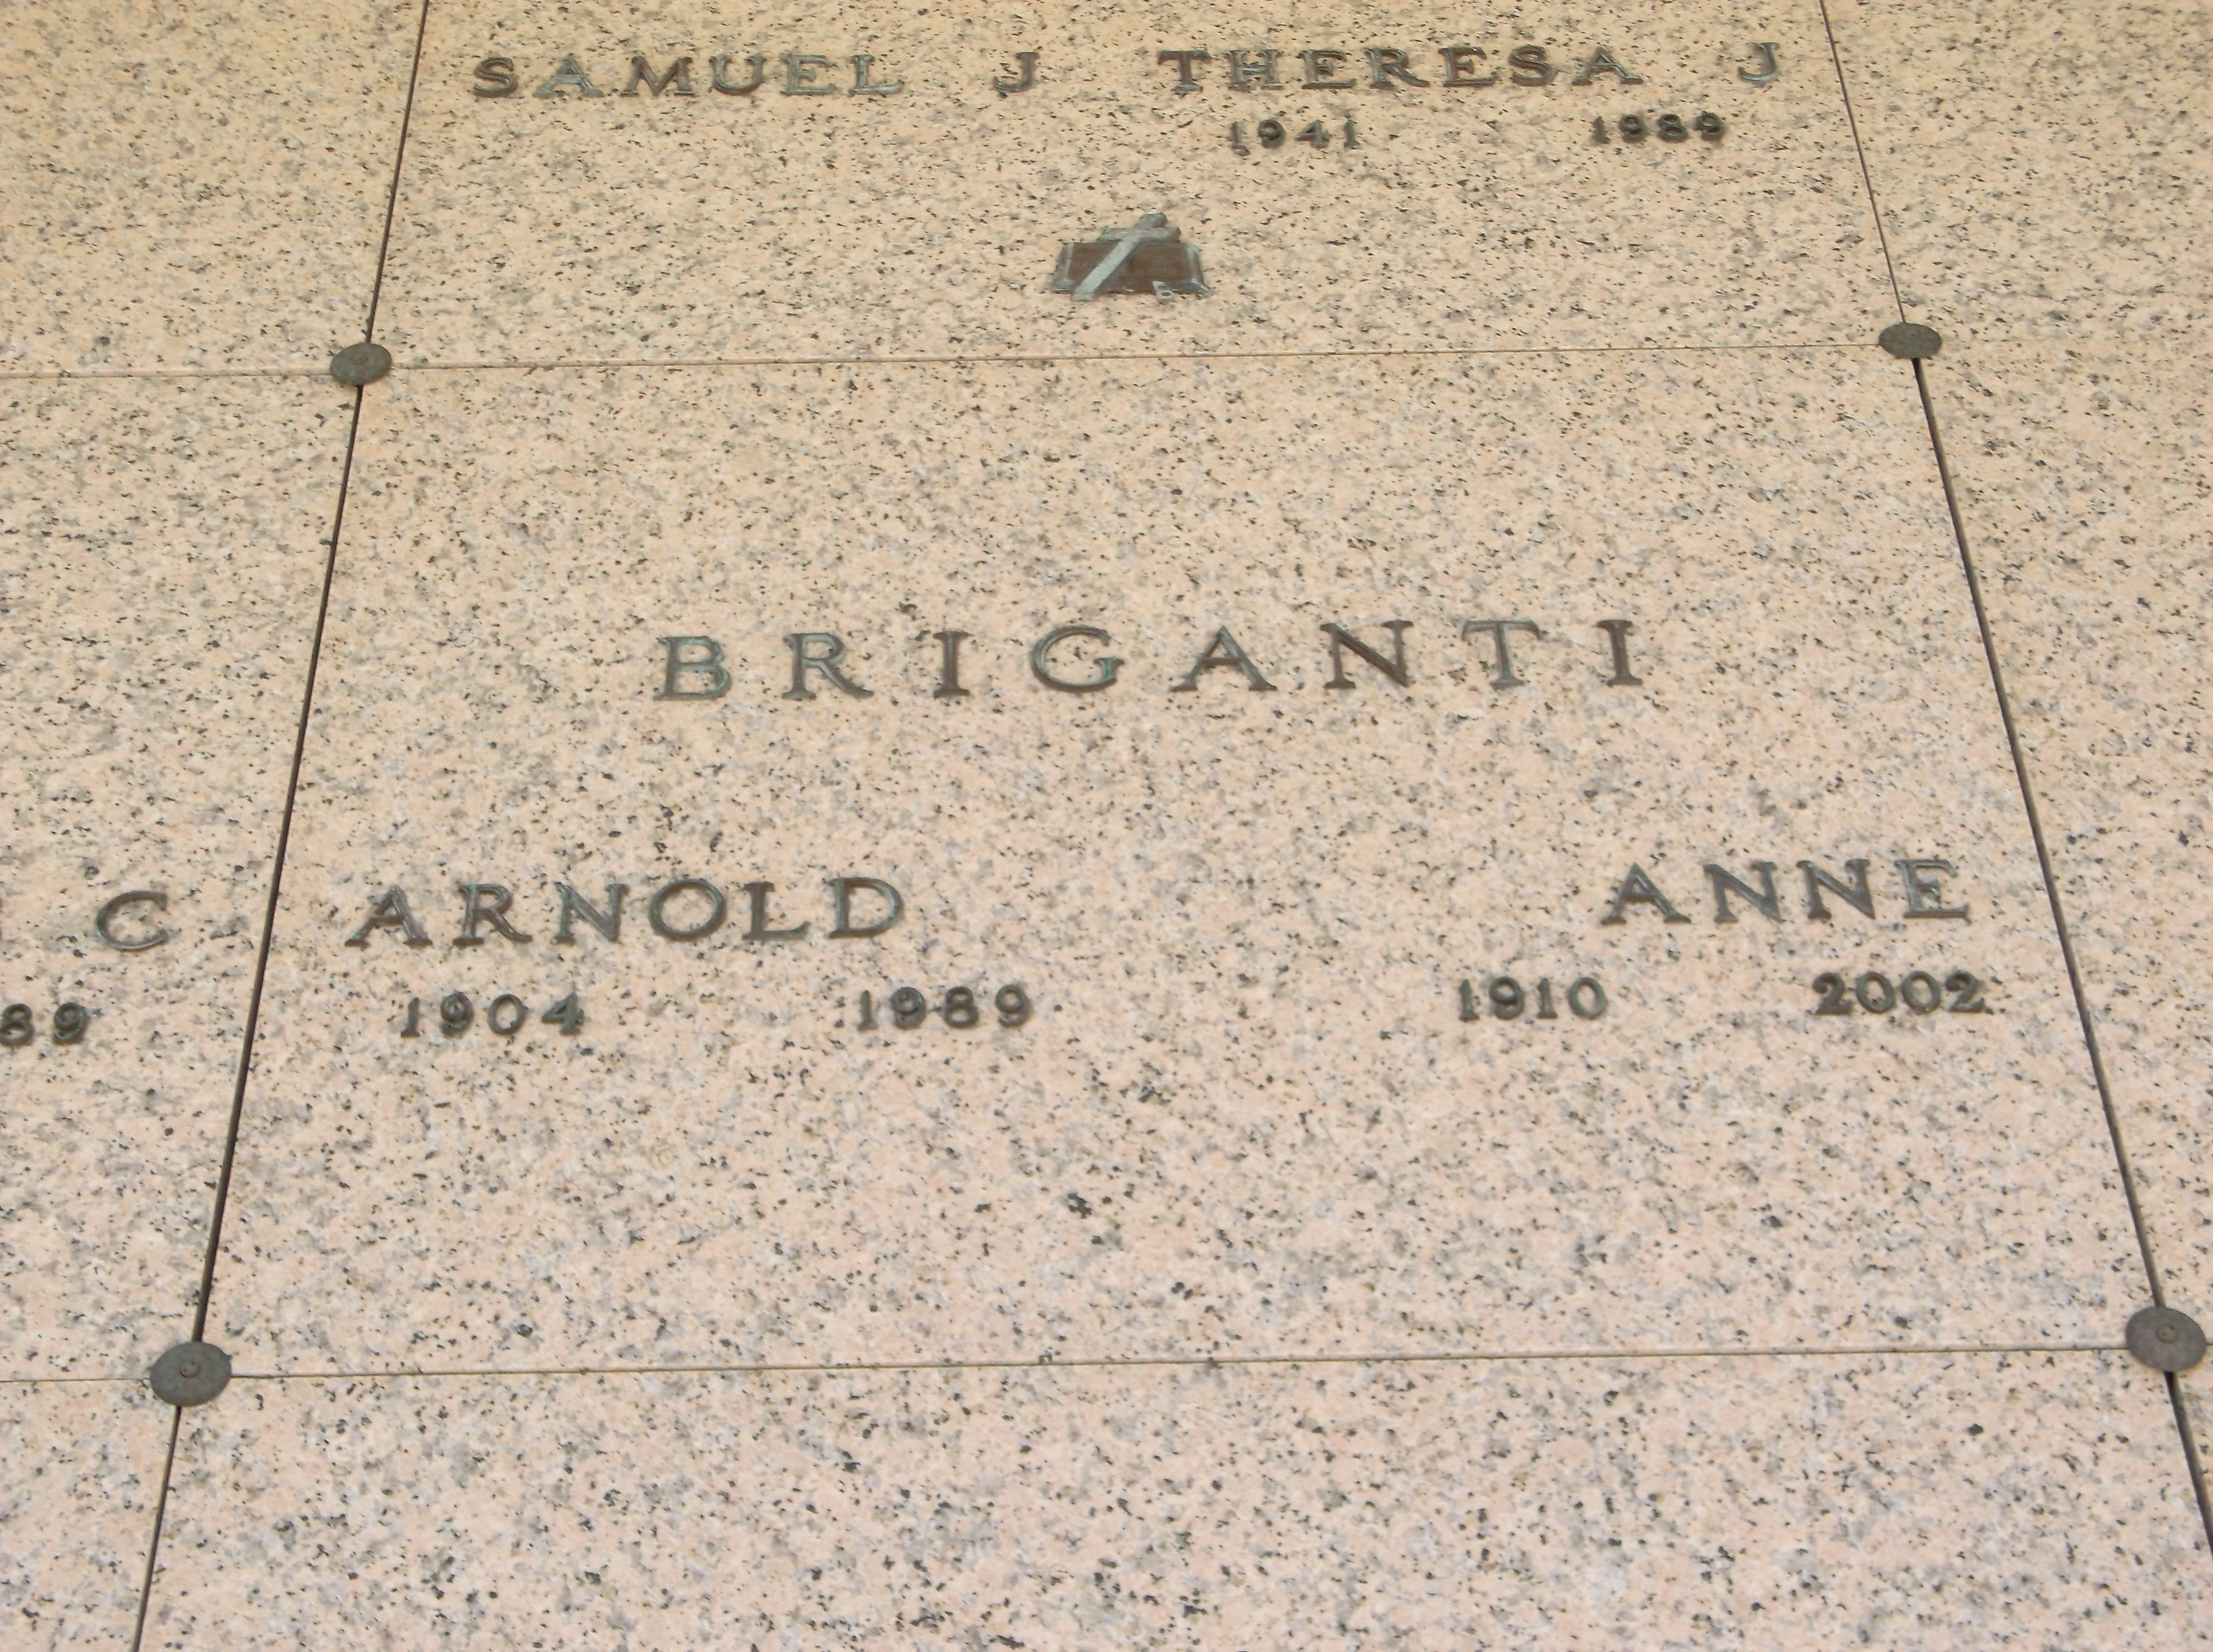 Anne Briganti